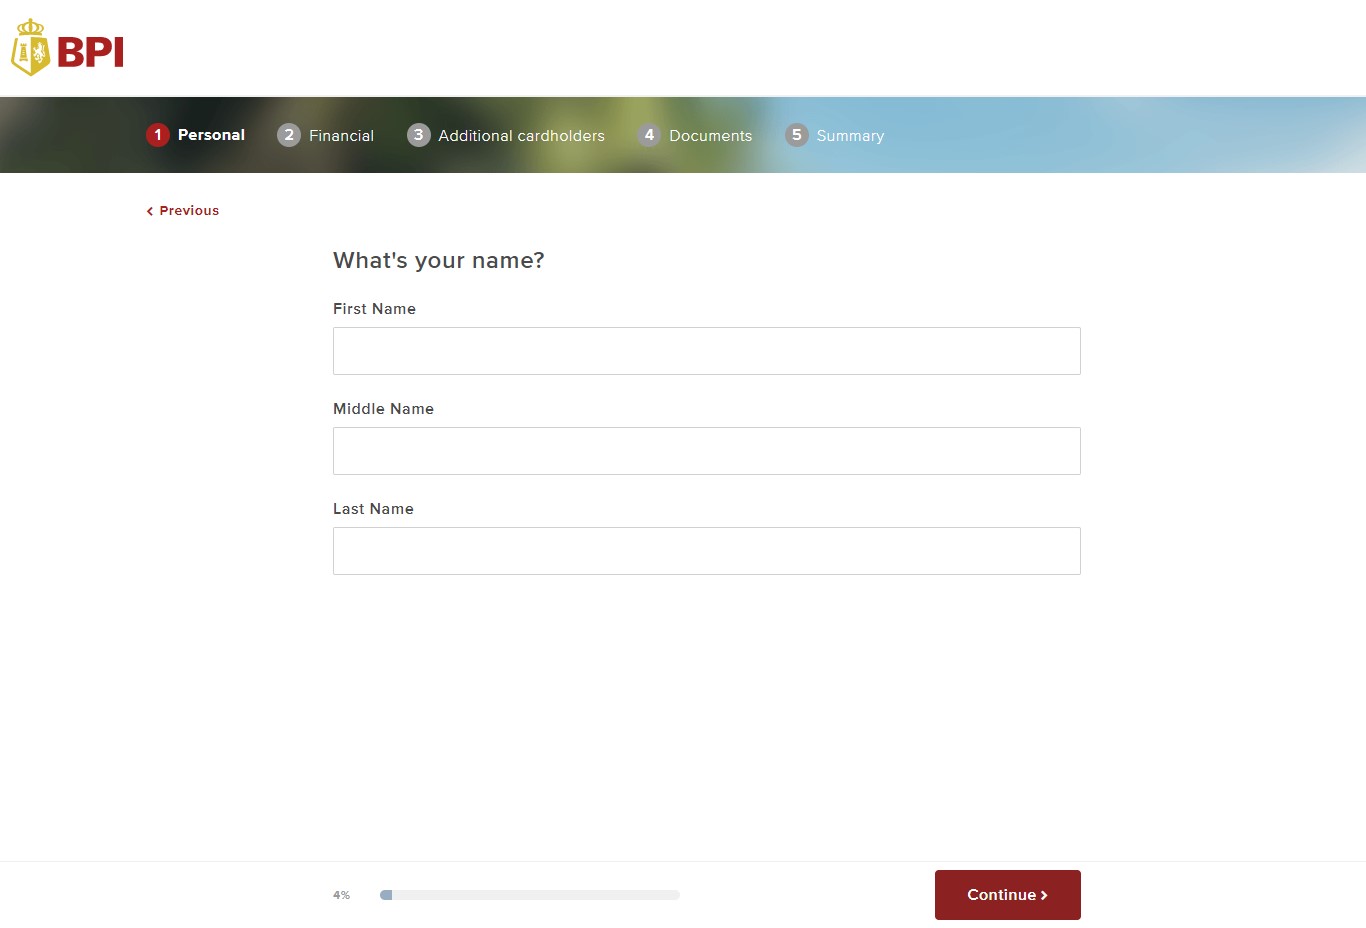 bpi credit card application - online application form